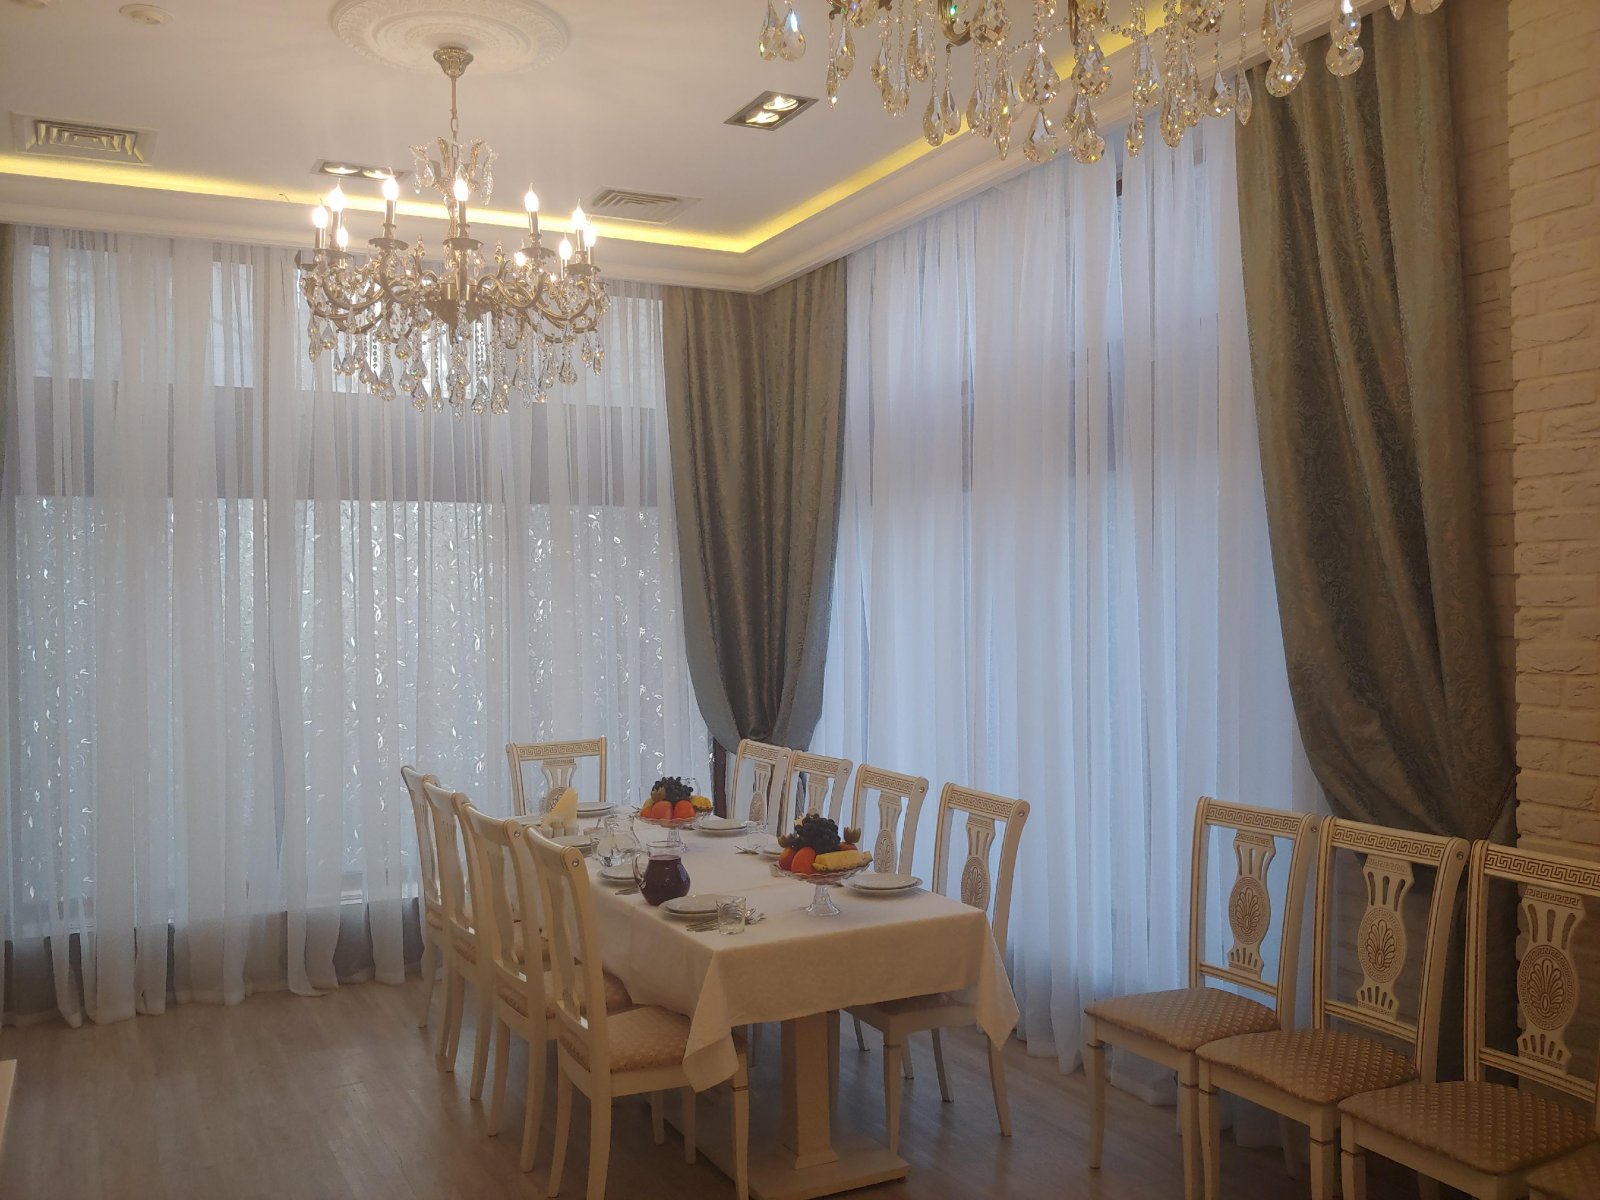 Идель, ресторан татарской кухни, Мичуринский проспект, 29, 1 этаж